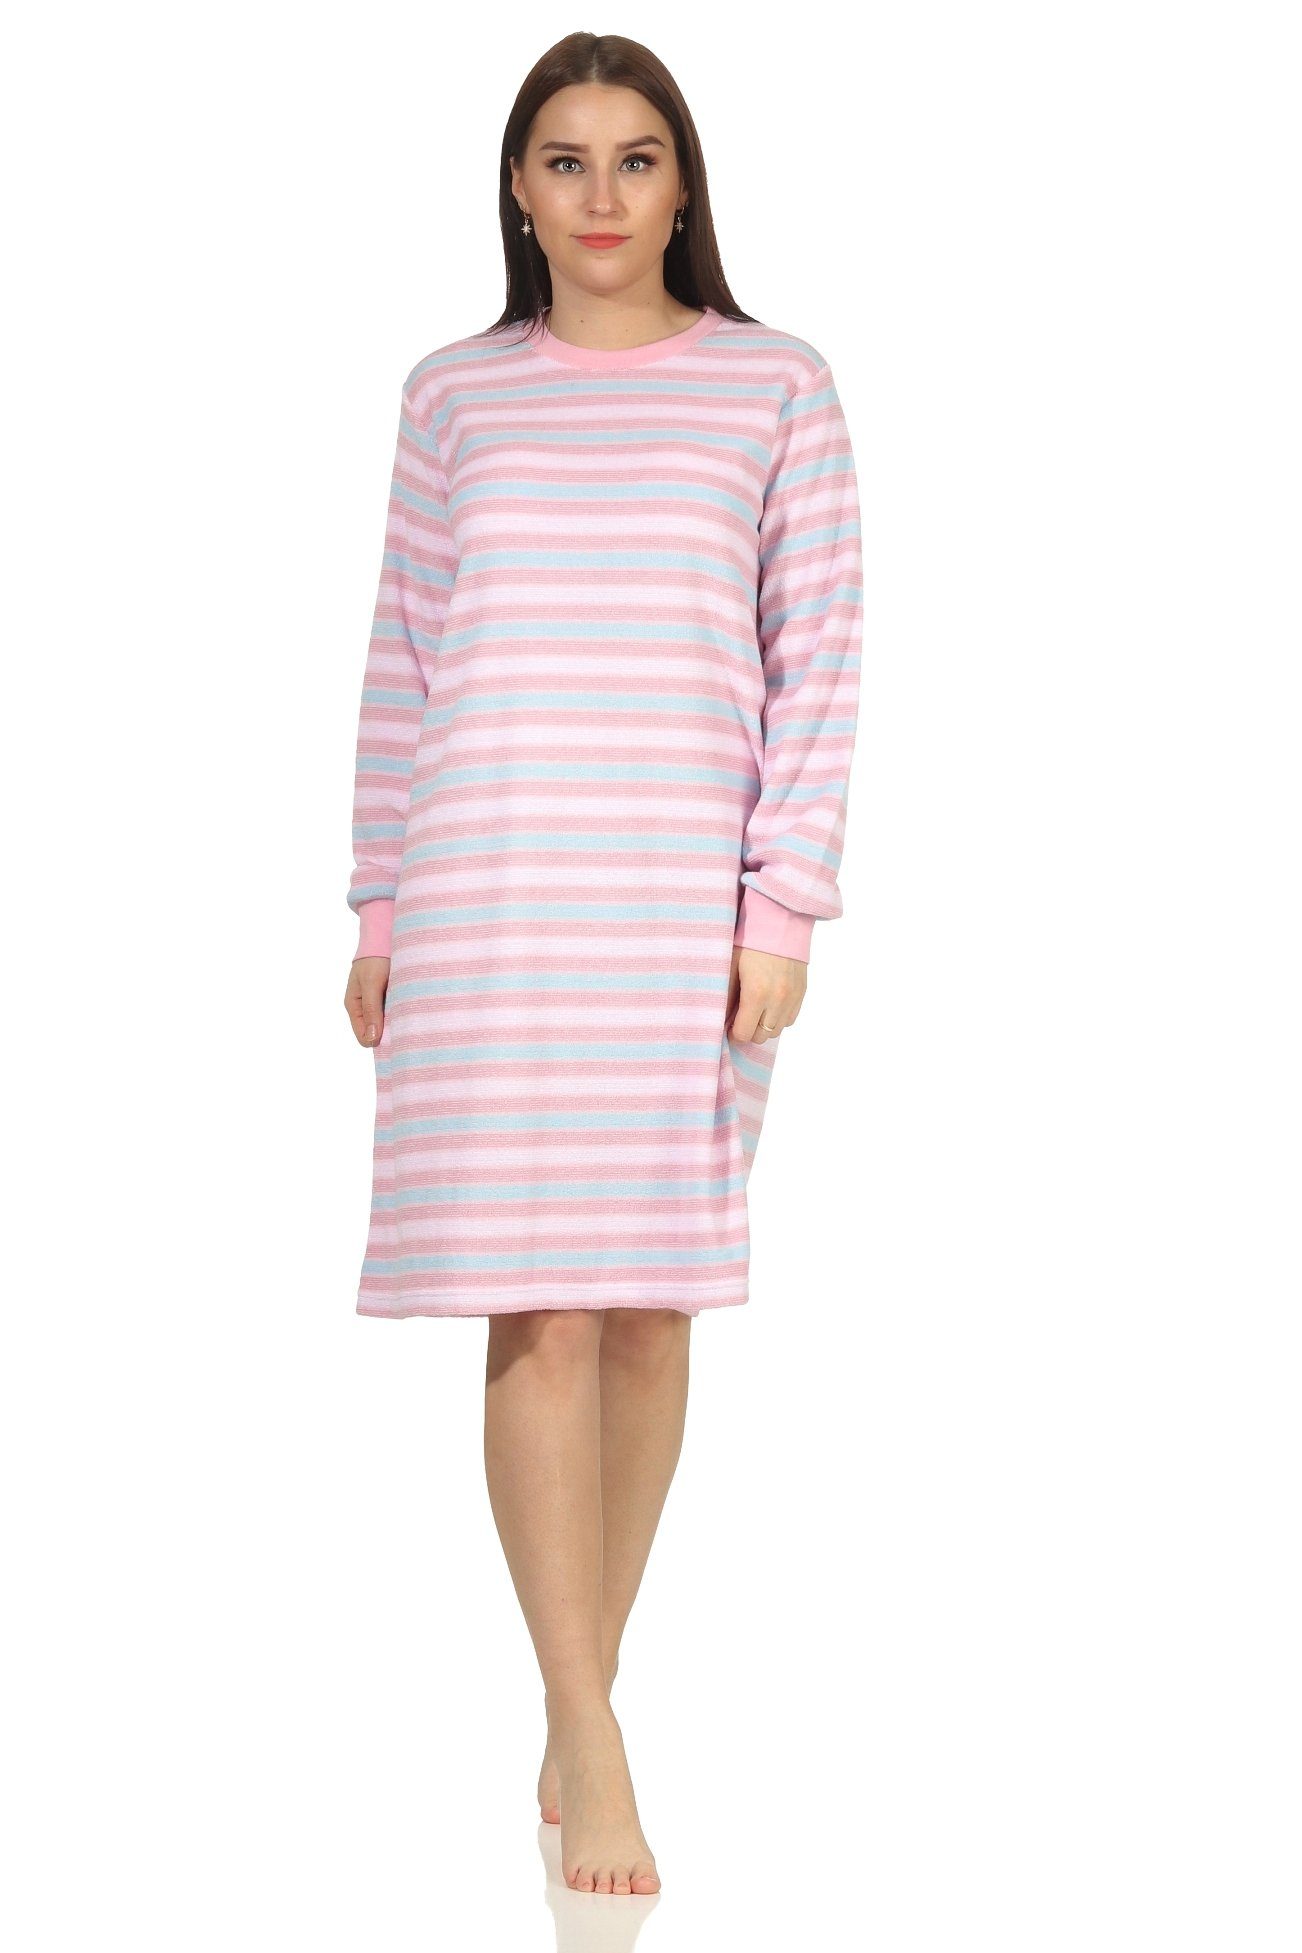 Nachthemd Ringeloptik in langarm Creative mit Frottee by Normann Bündchen Damen rosa Nachthemd